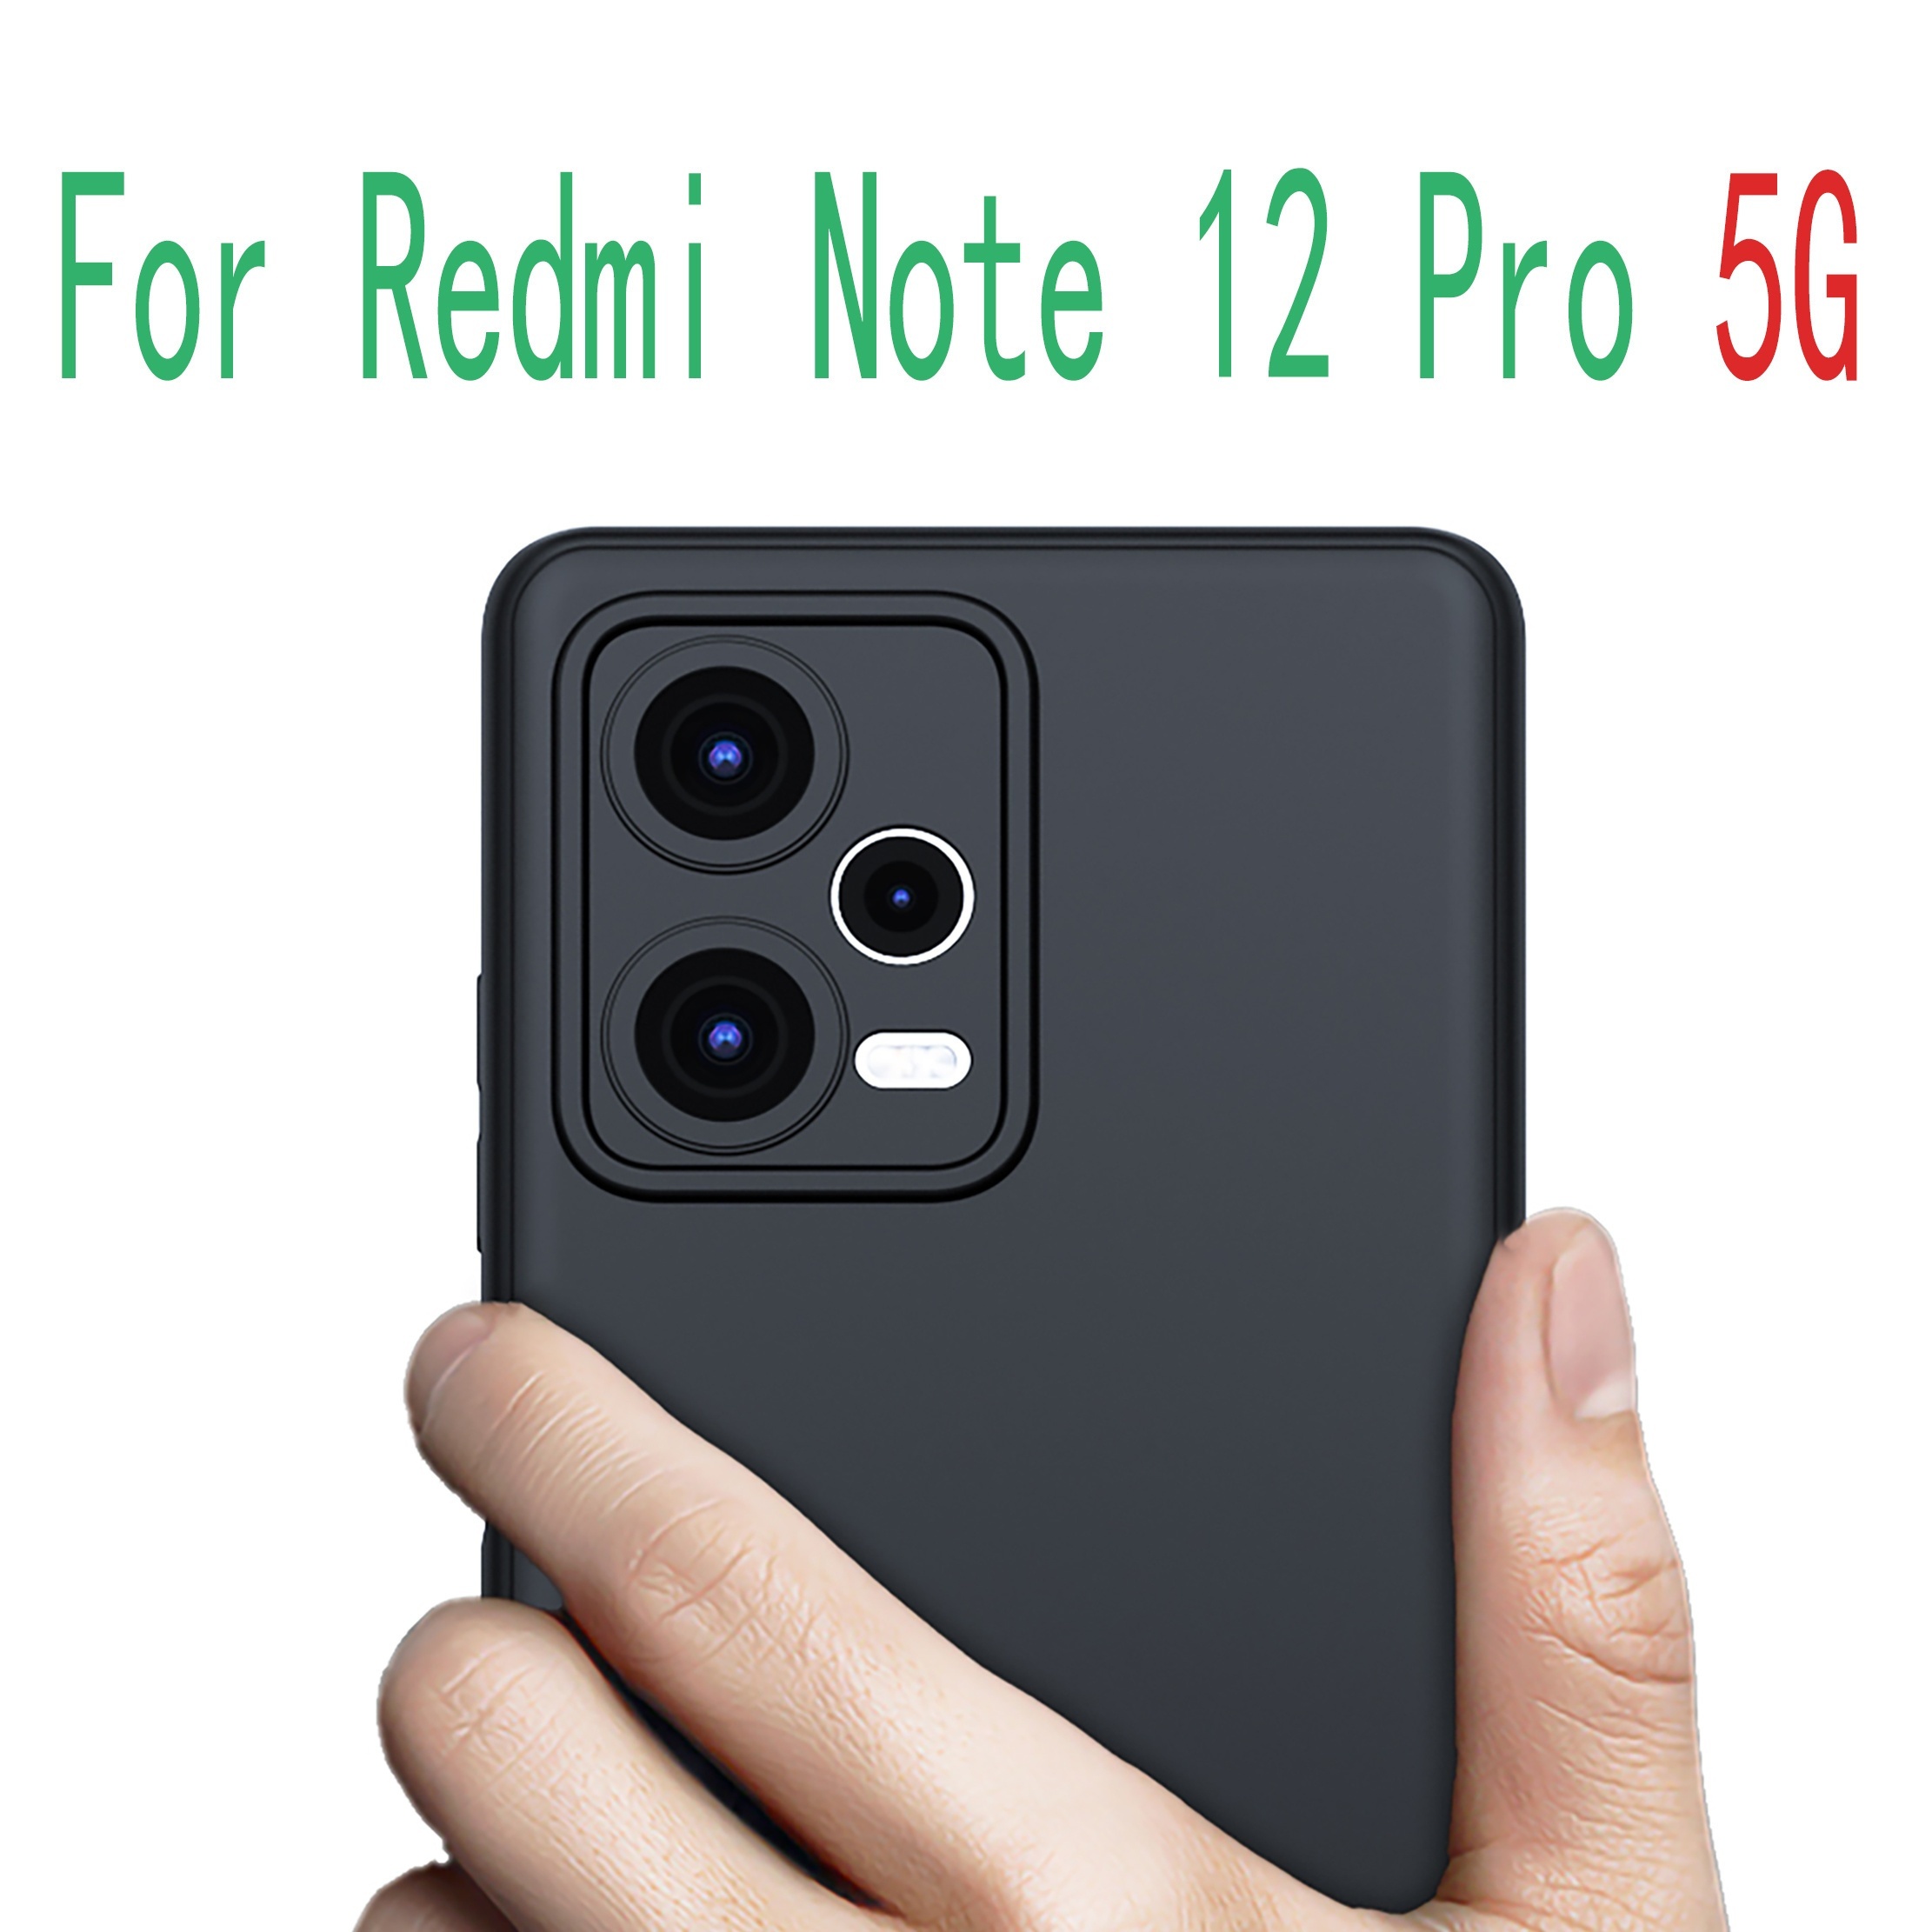 Funda de silicona TPU caso suave para Xiaomi Redmi Note 12 Pro Note12 Pro  4G funda carcasa del teléfono cubierta trasera